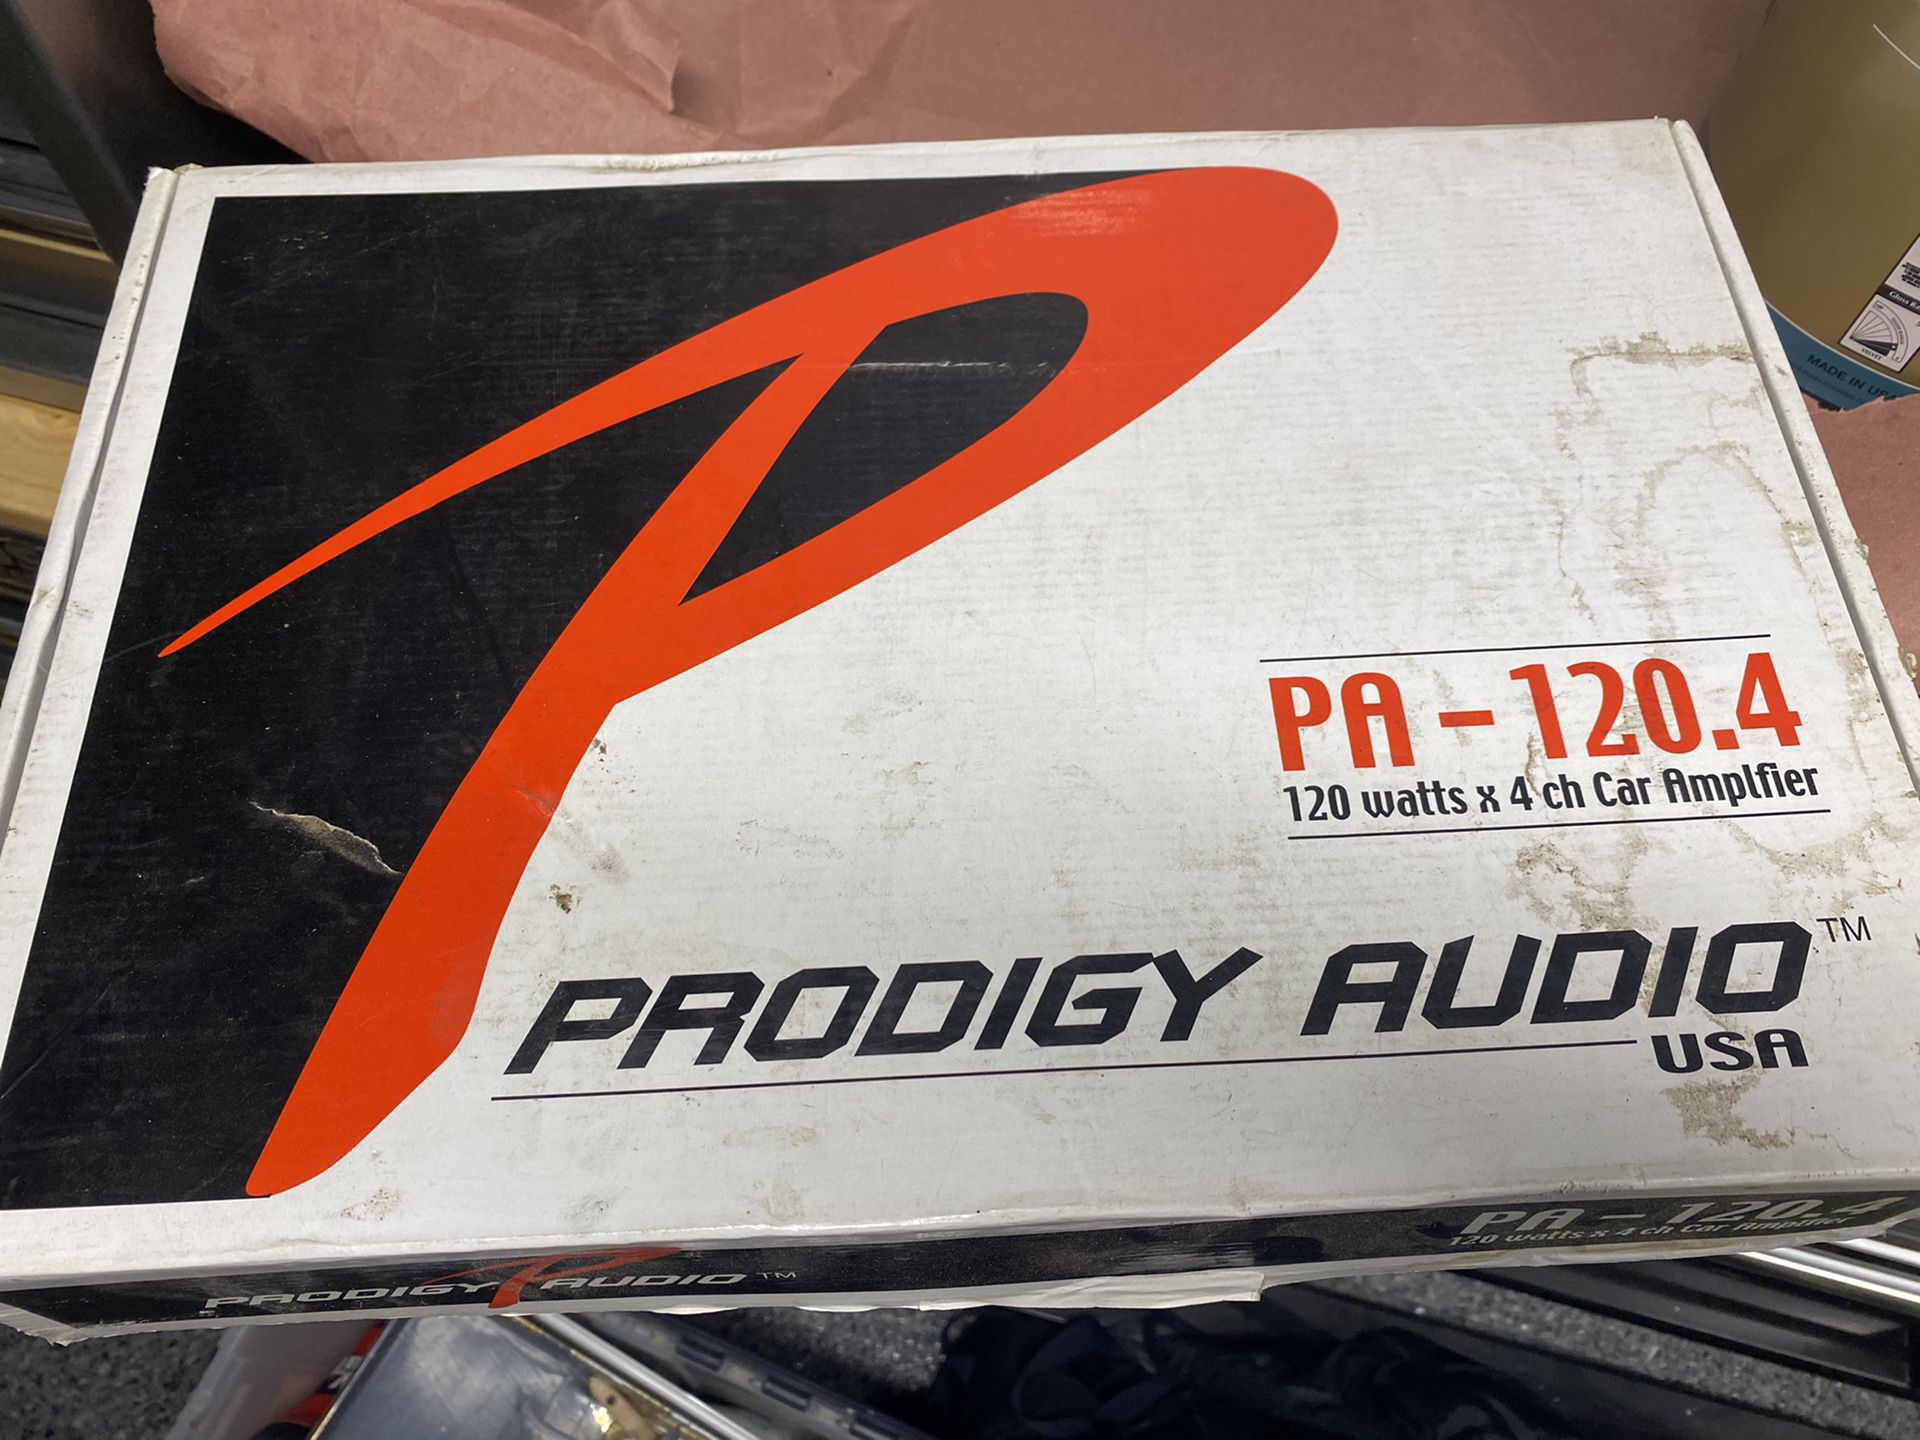 Car Audio Amplifier 120 watt 4 channel Prodigy Audio